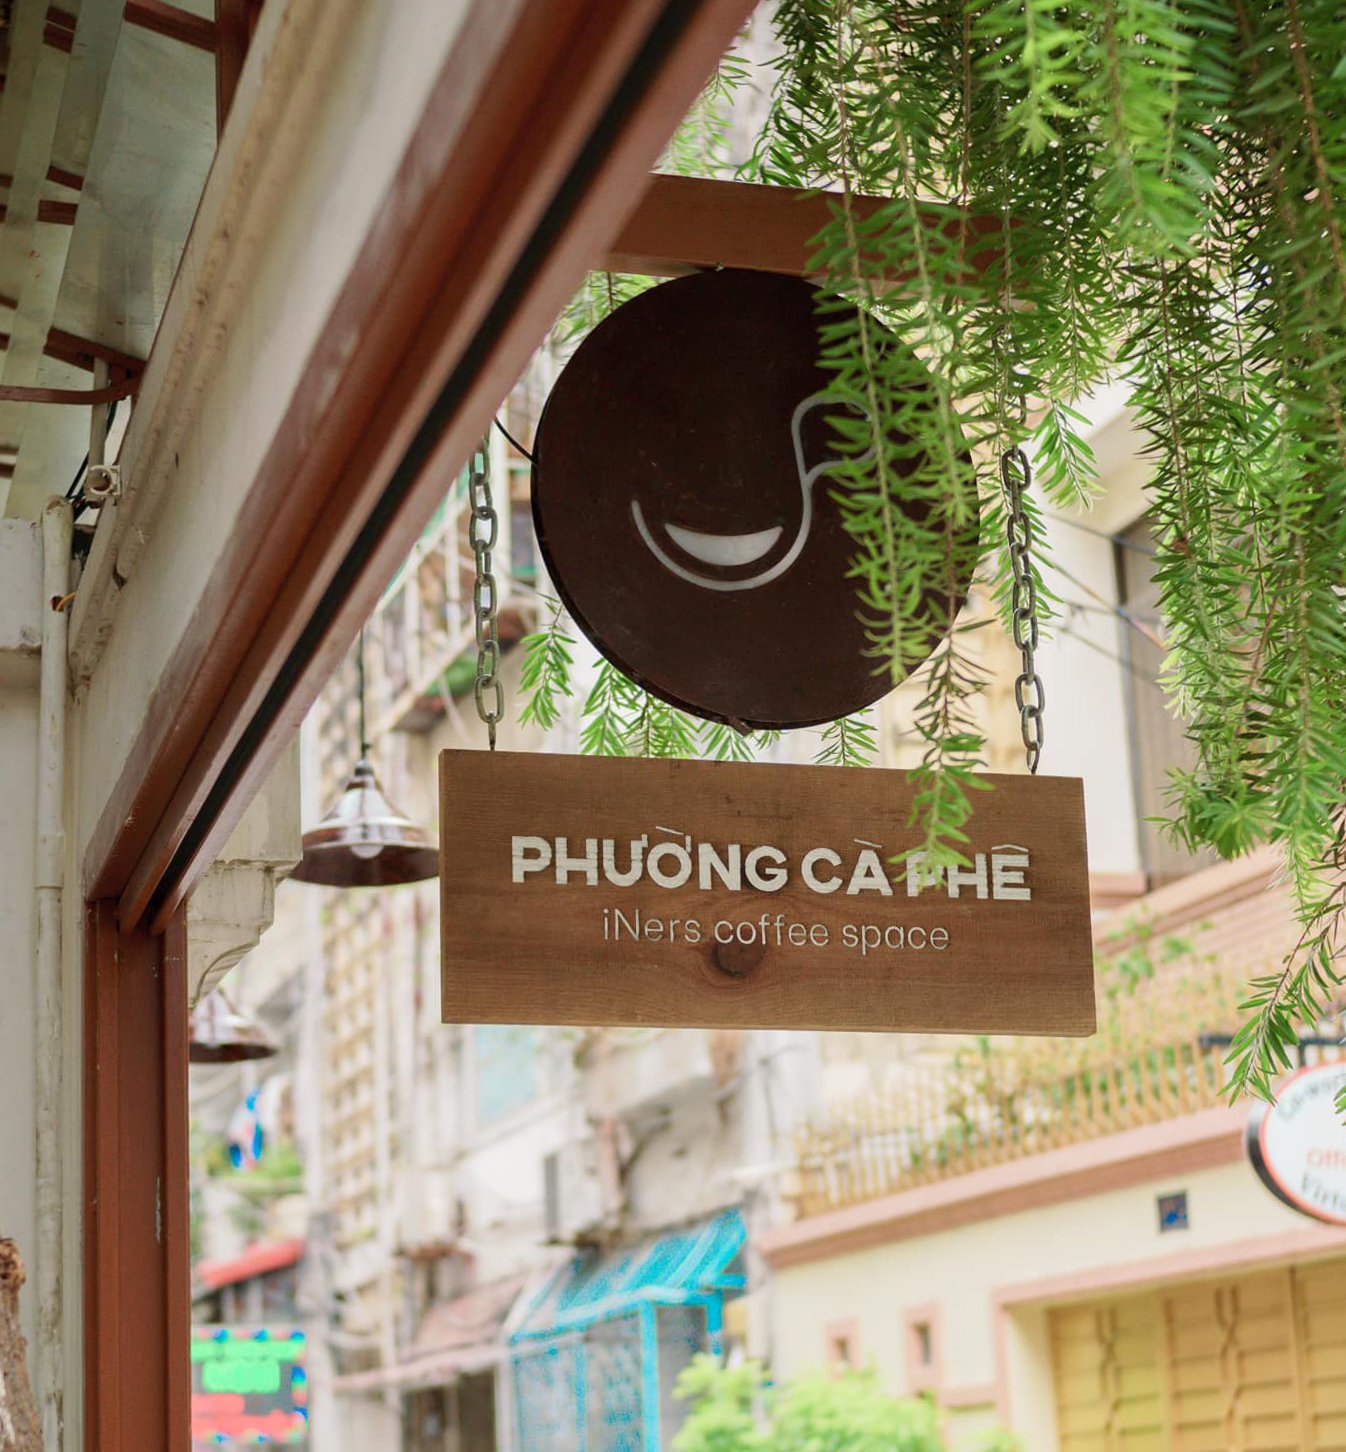 Phuong Ca Phe